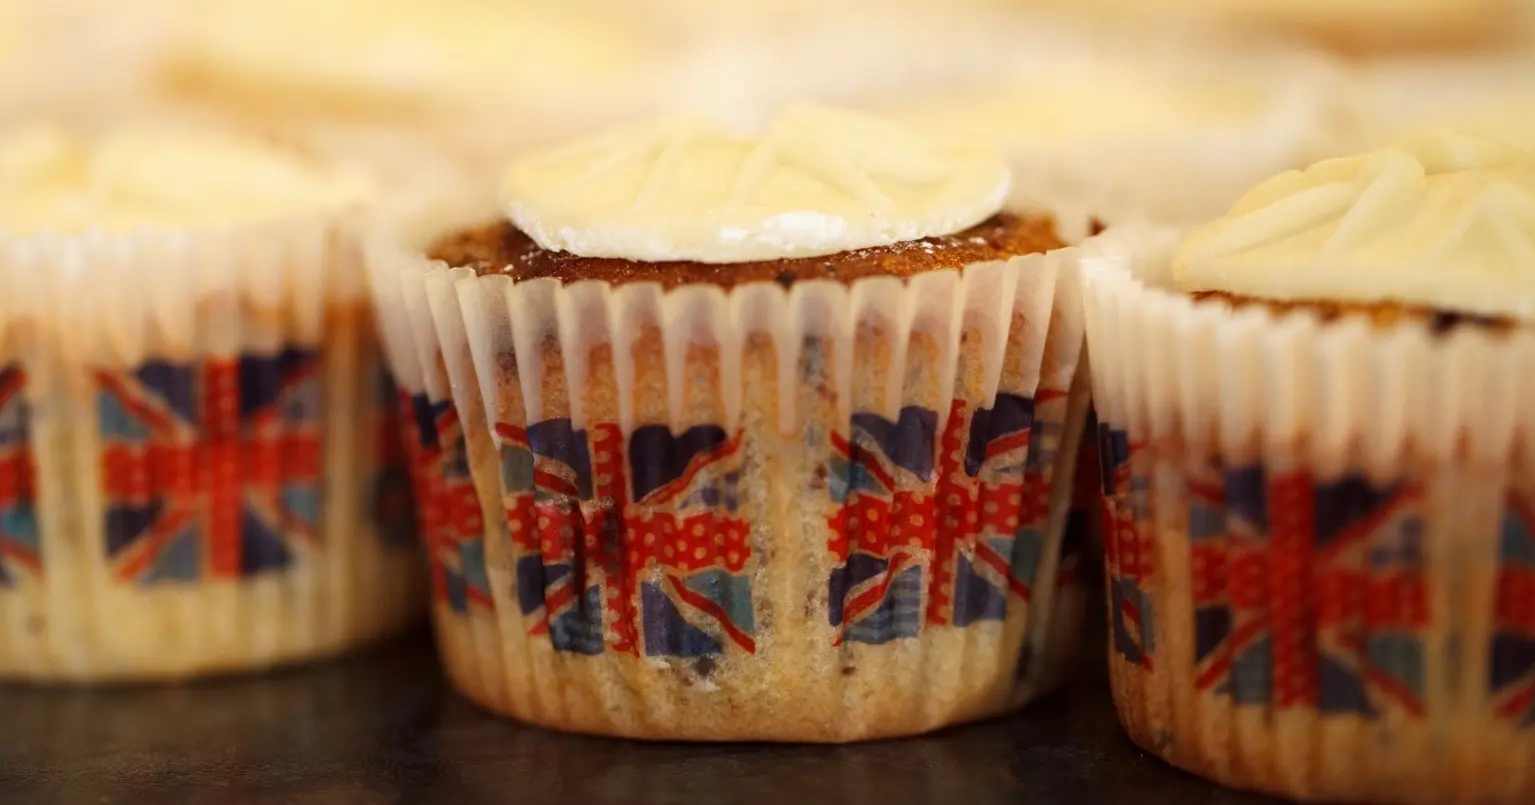 Contre l’obésité, le Royaume-Uni veut réduire la taille de ses gâteaux